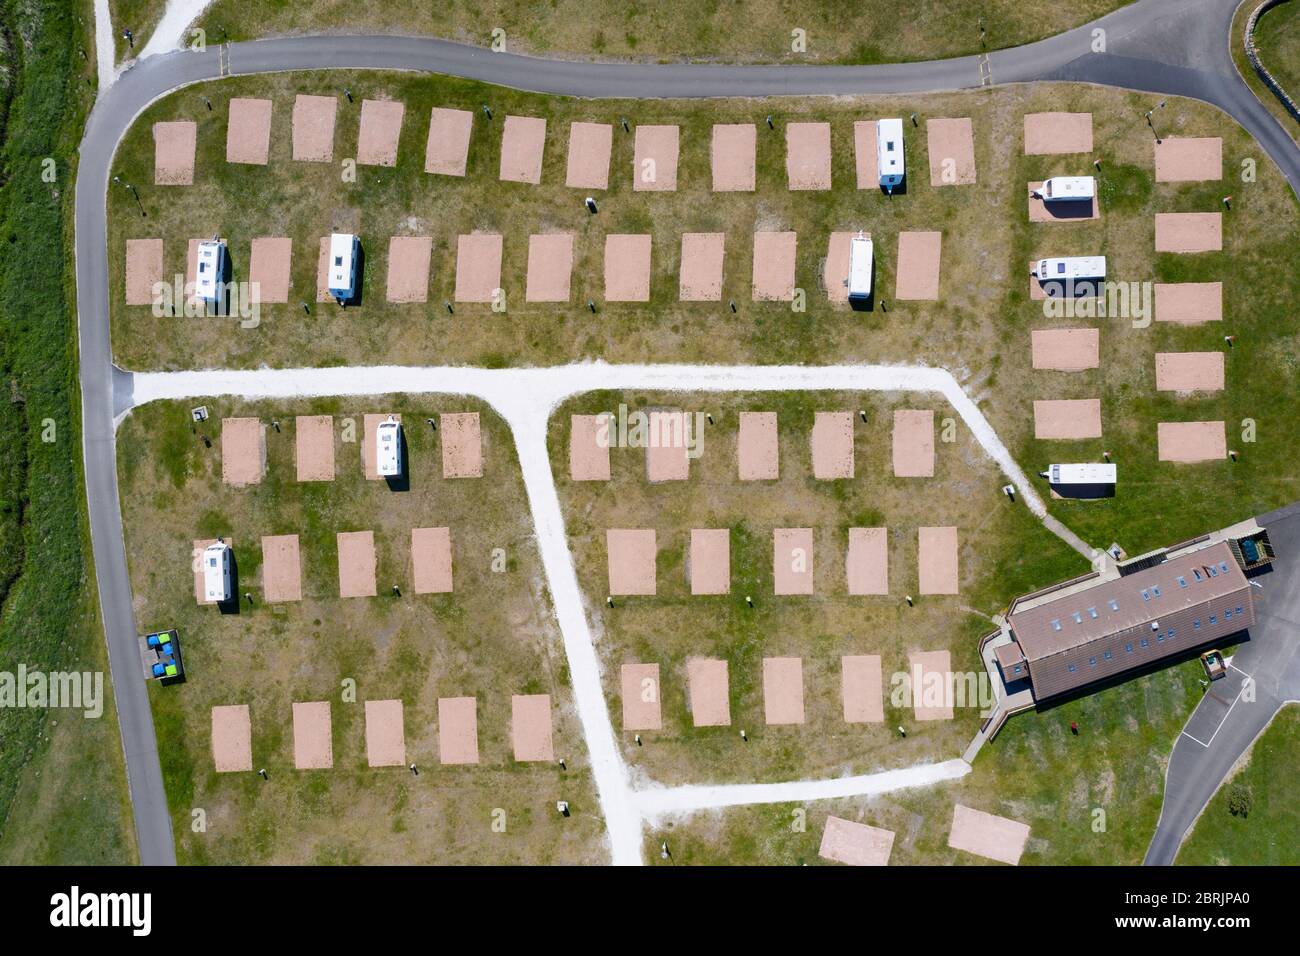 Vue aérienne des emplacements de caravanes vides au parc de vacances Elie près d'Elie à Fife. Normalement occupé à cette époque de l'année mais est fermé en raison de covid-19 verrouillage. Banque D'Images